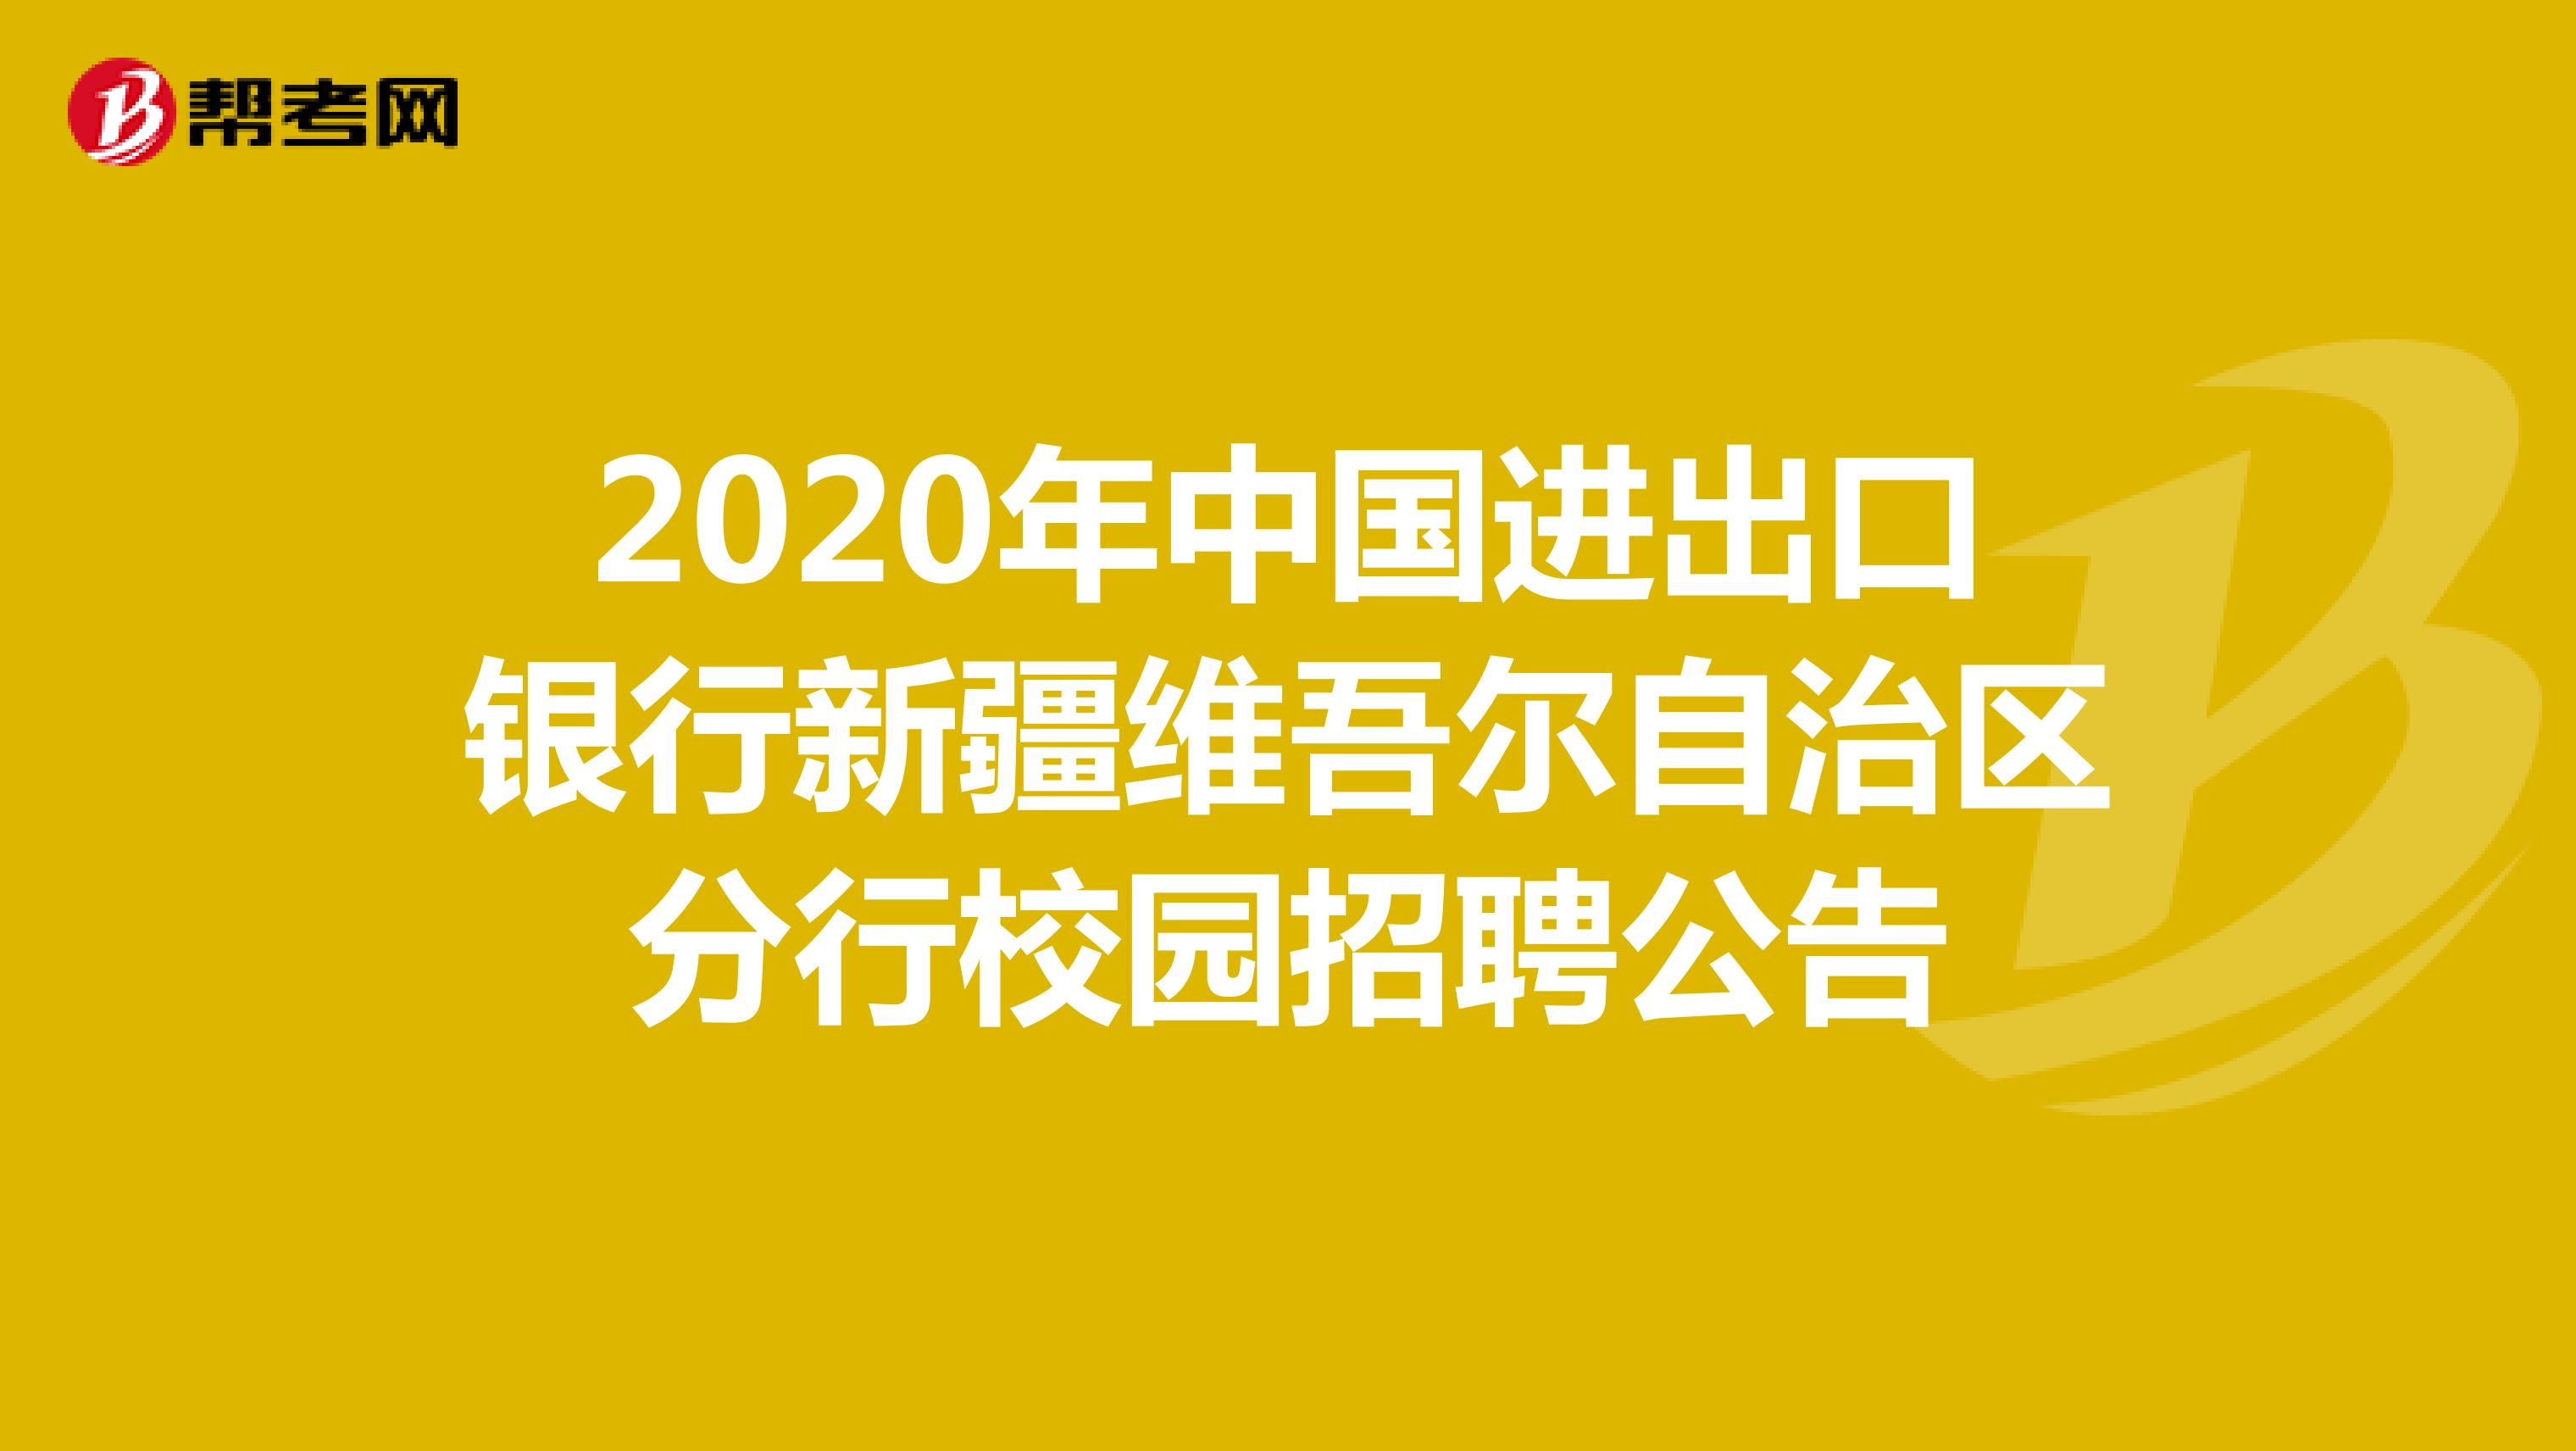 2020年中国进出口银行新疆维吾尔自治区分行校园招聘公告